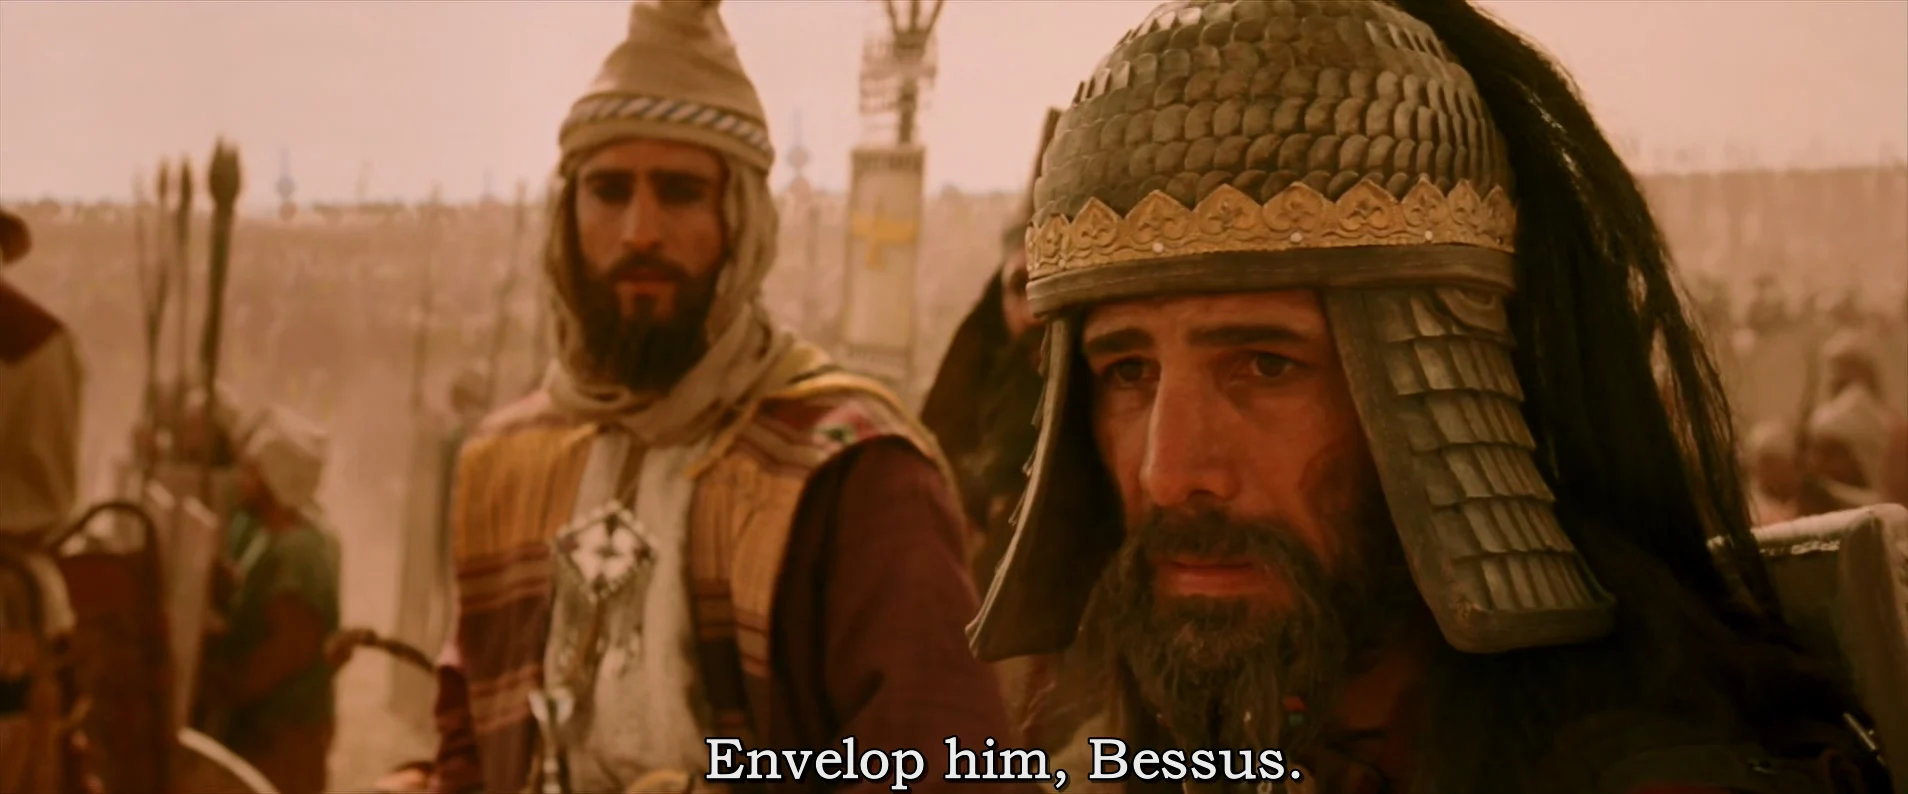 贝苏斯被下令从外侧包抄亚历山大的骑兵